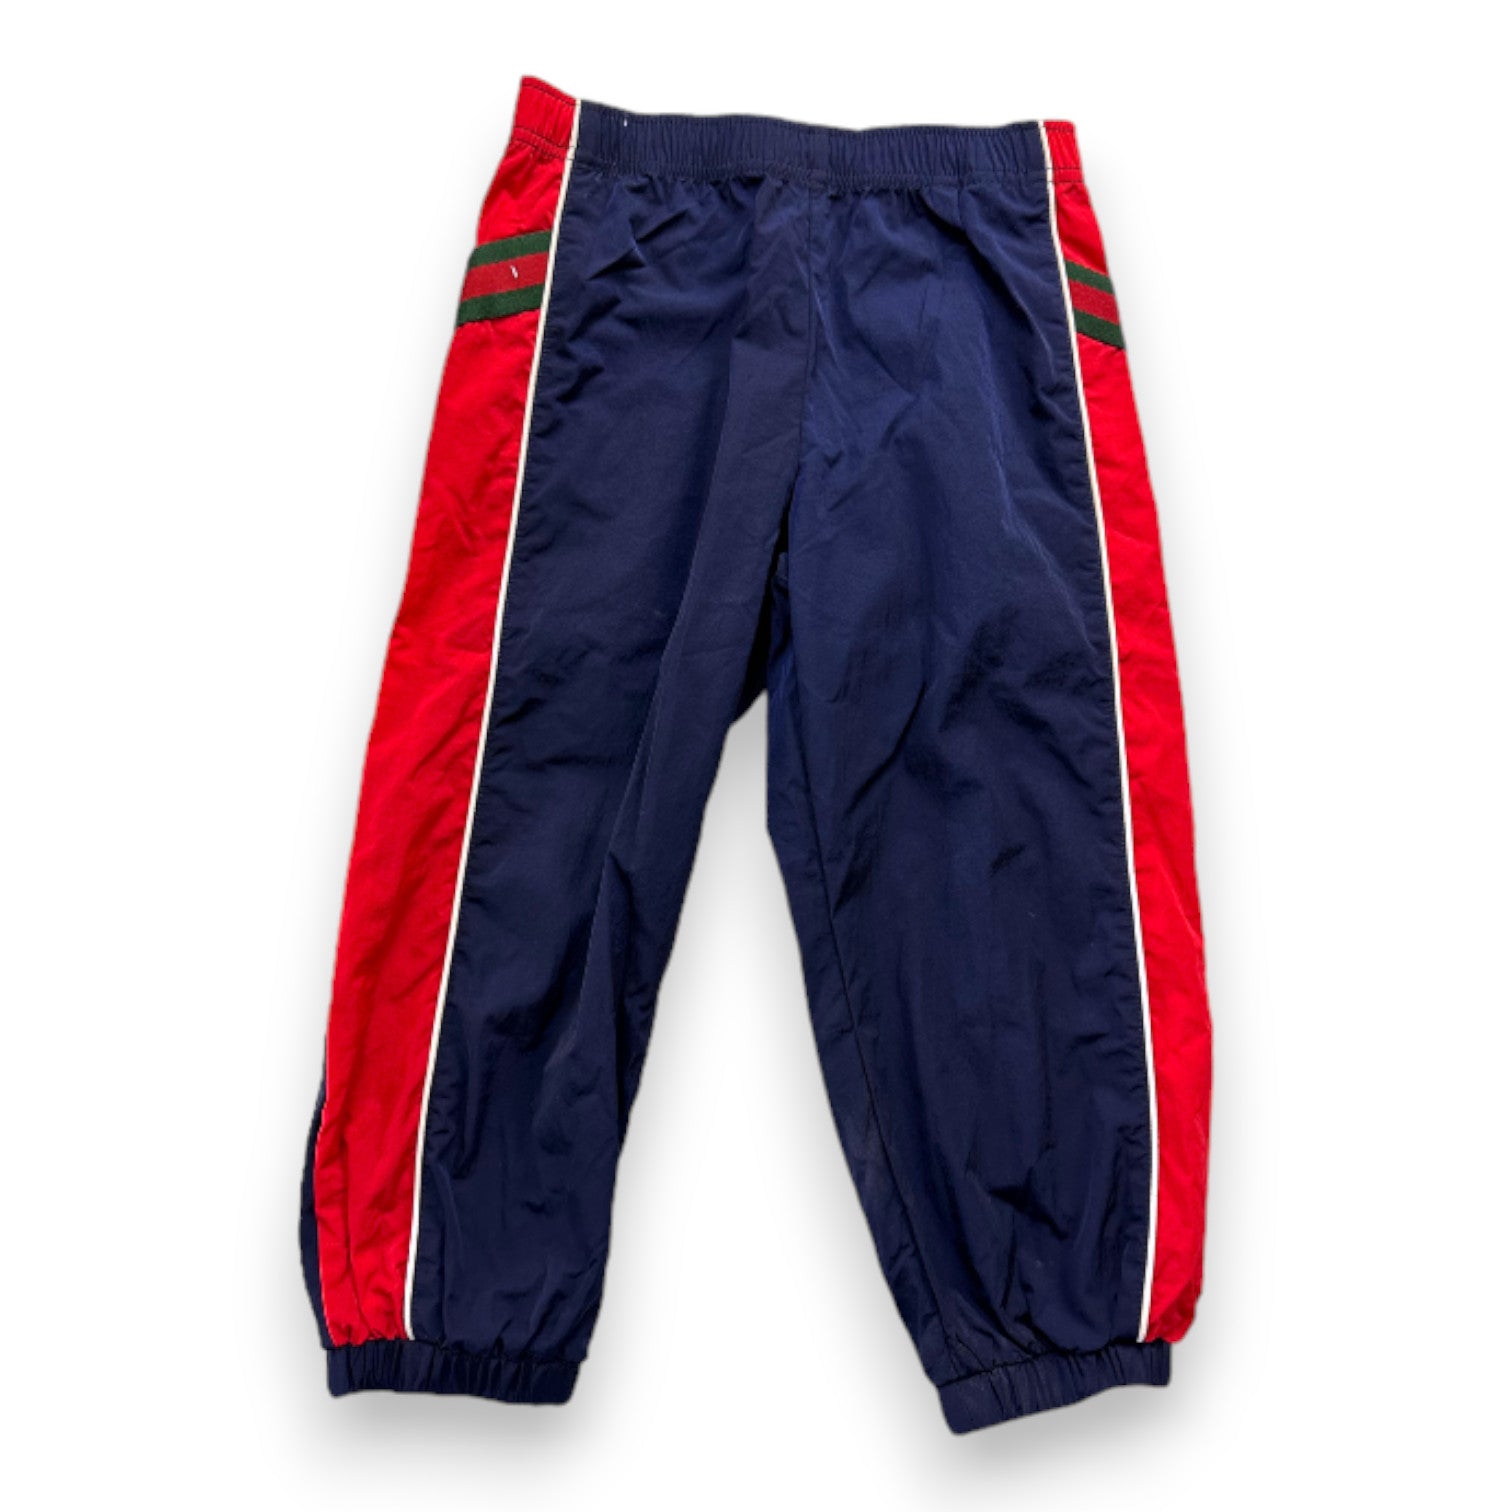 GUCCI - Pantalon de jogging bleu et rouge - 3 ans